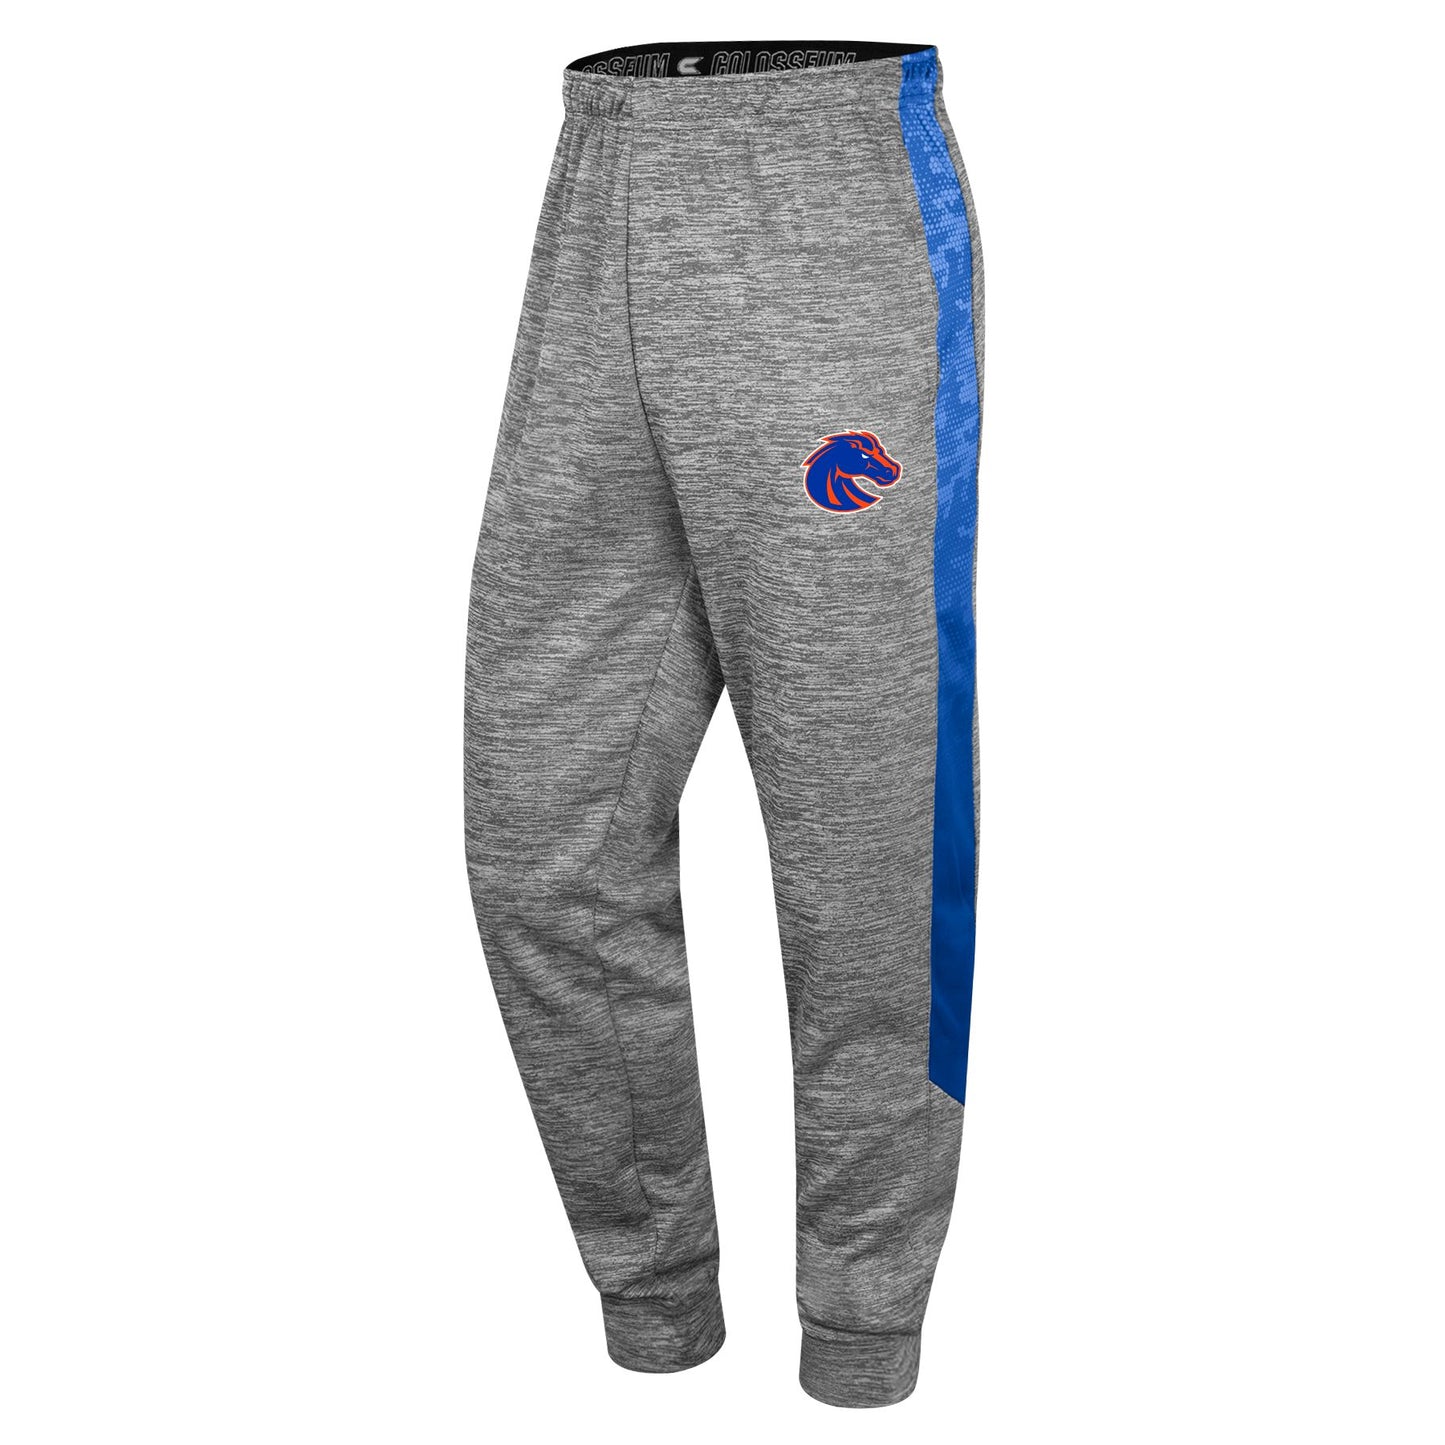 Boise State Broncos Colosseum Men's Sweatpants (Grey)